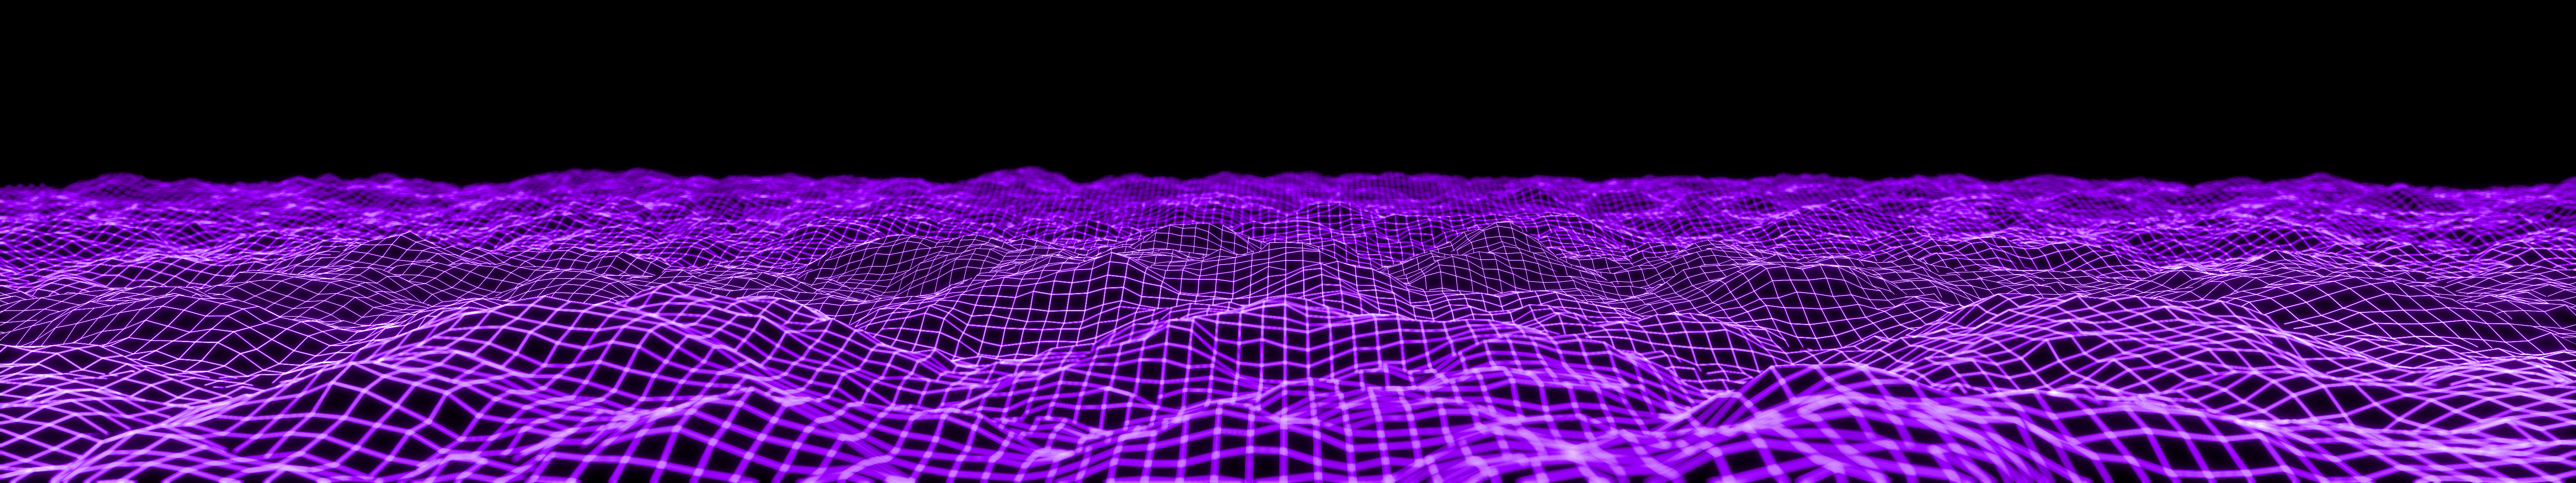 Purple Triple Monitor Wallpaper